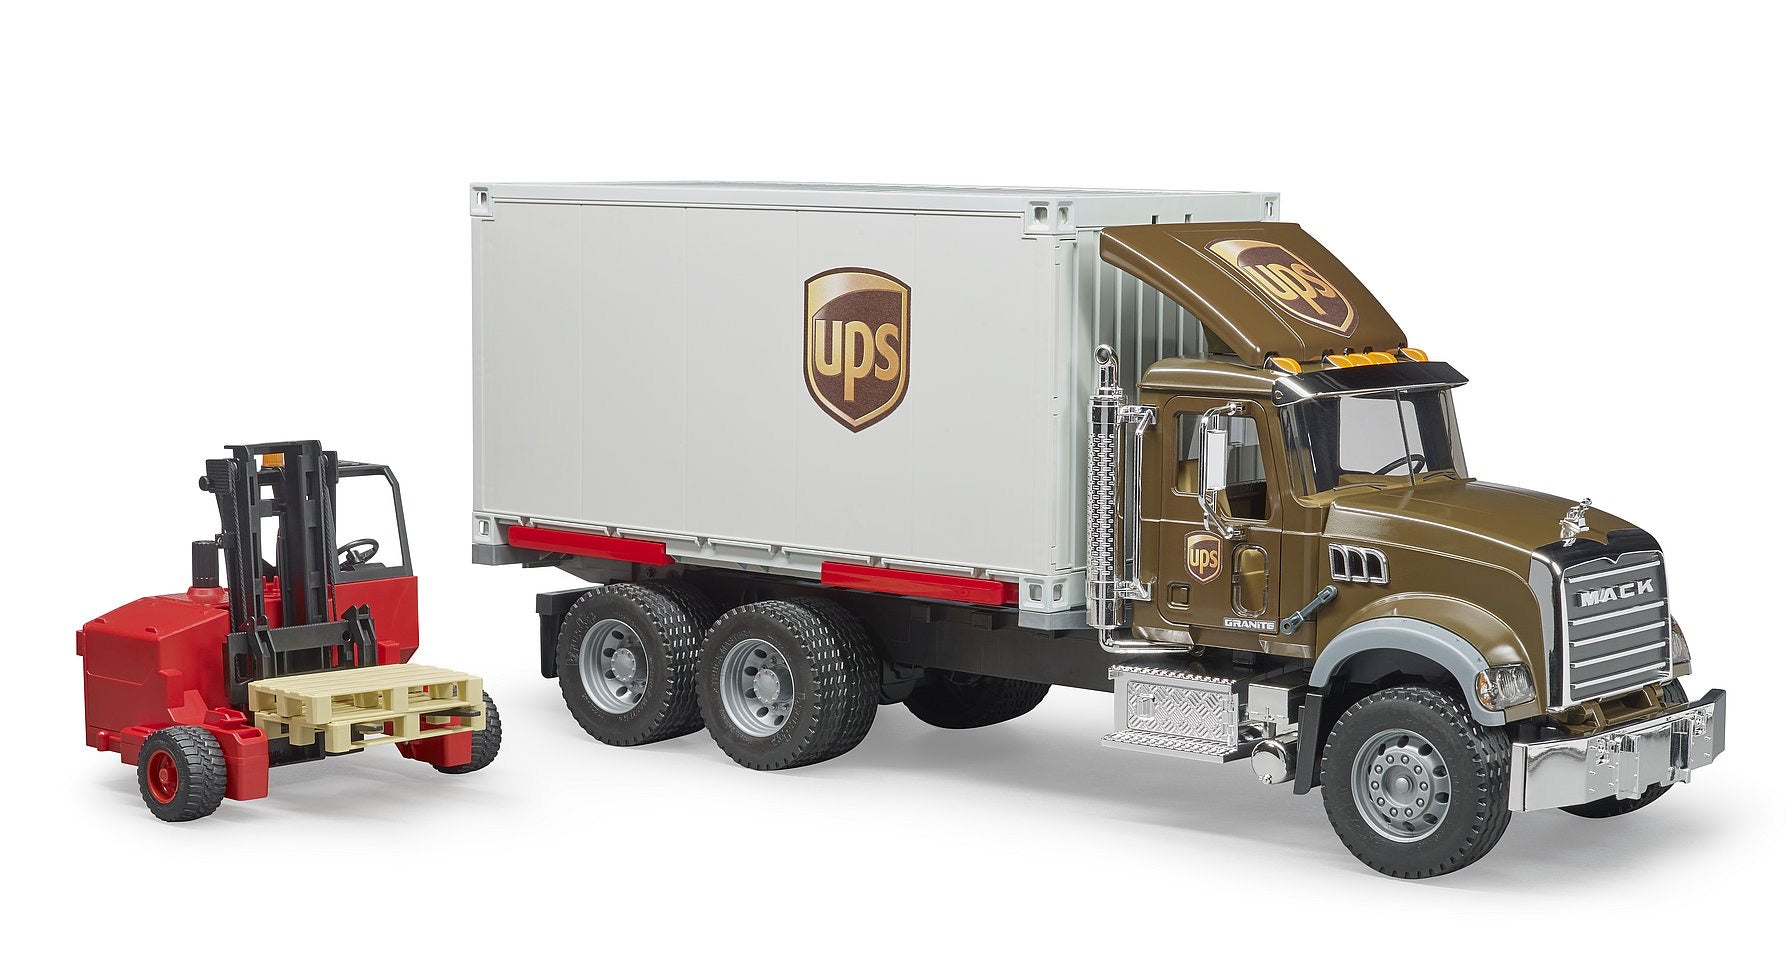 MACK Granite UPS Logistics Truck & Forklift by Bruder #2828